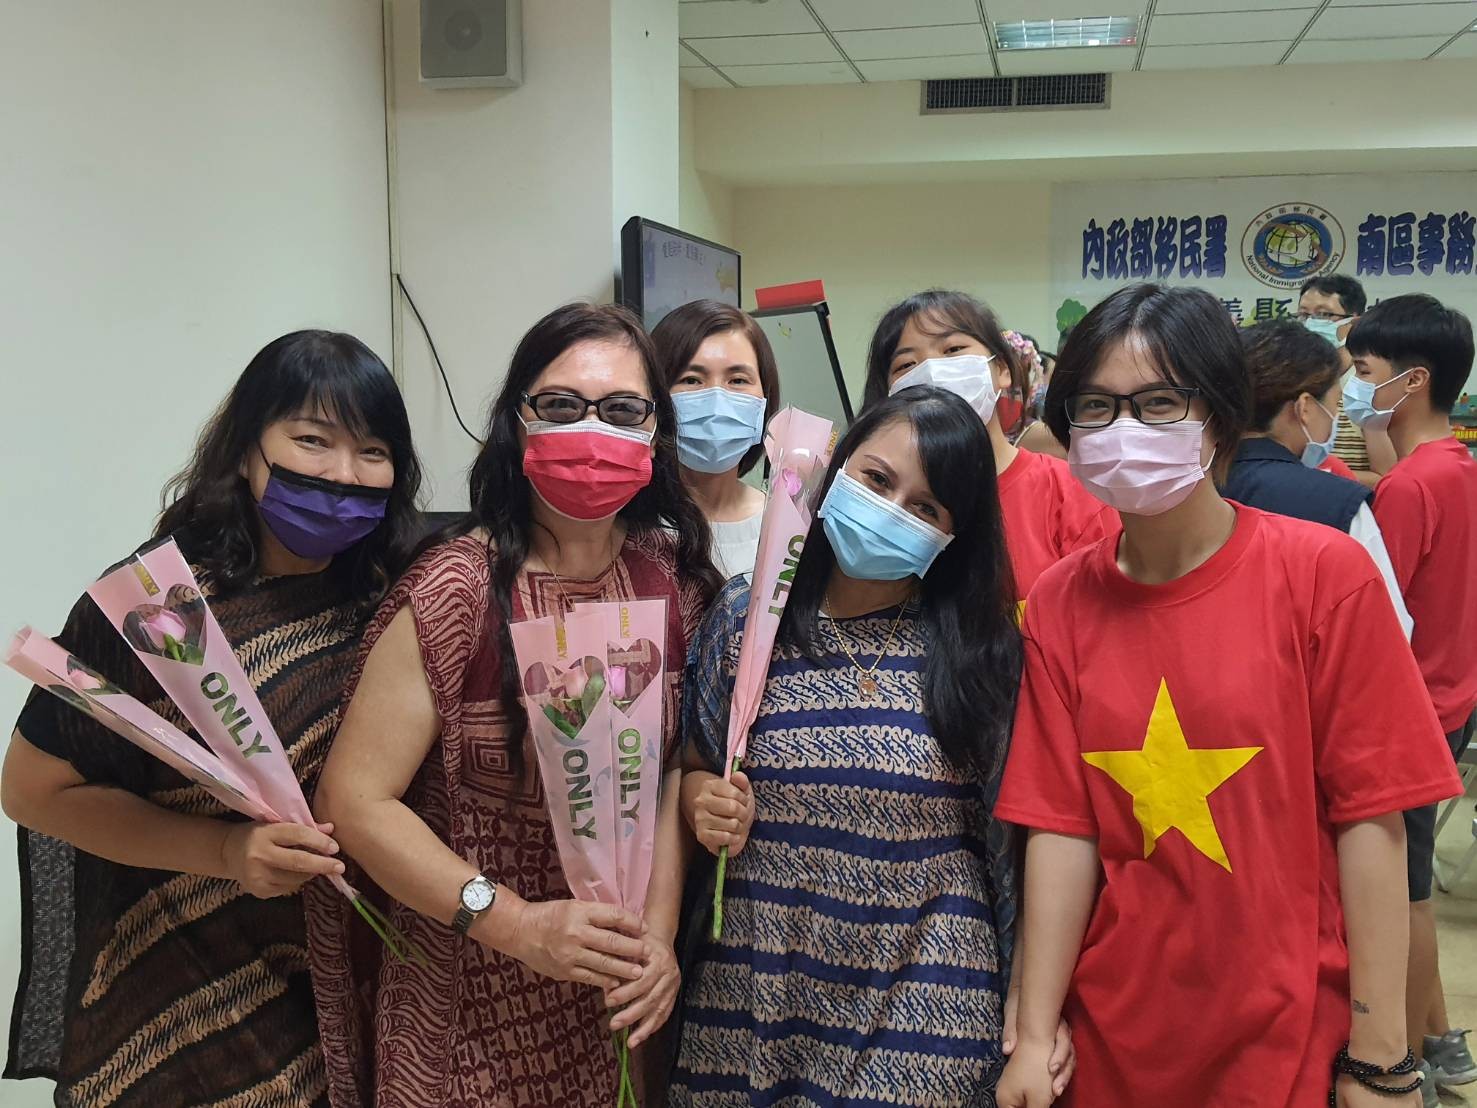 Ngày 20 tháng 10 hàng năm được chọn là Ngày Phụ nữ Việt Nam. (Nguồn ảnh: Trạm Phục vụ của sở Di dân tại huyện Gia Nghĩa)